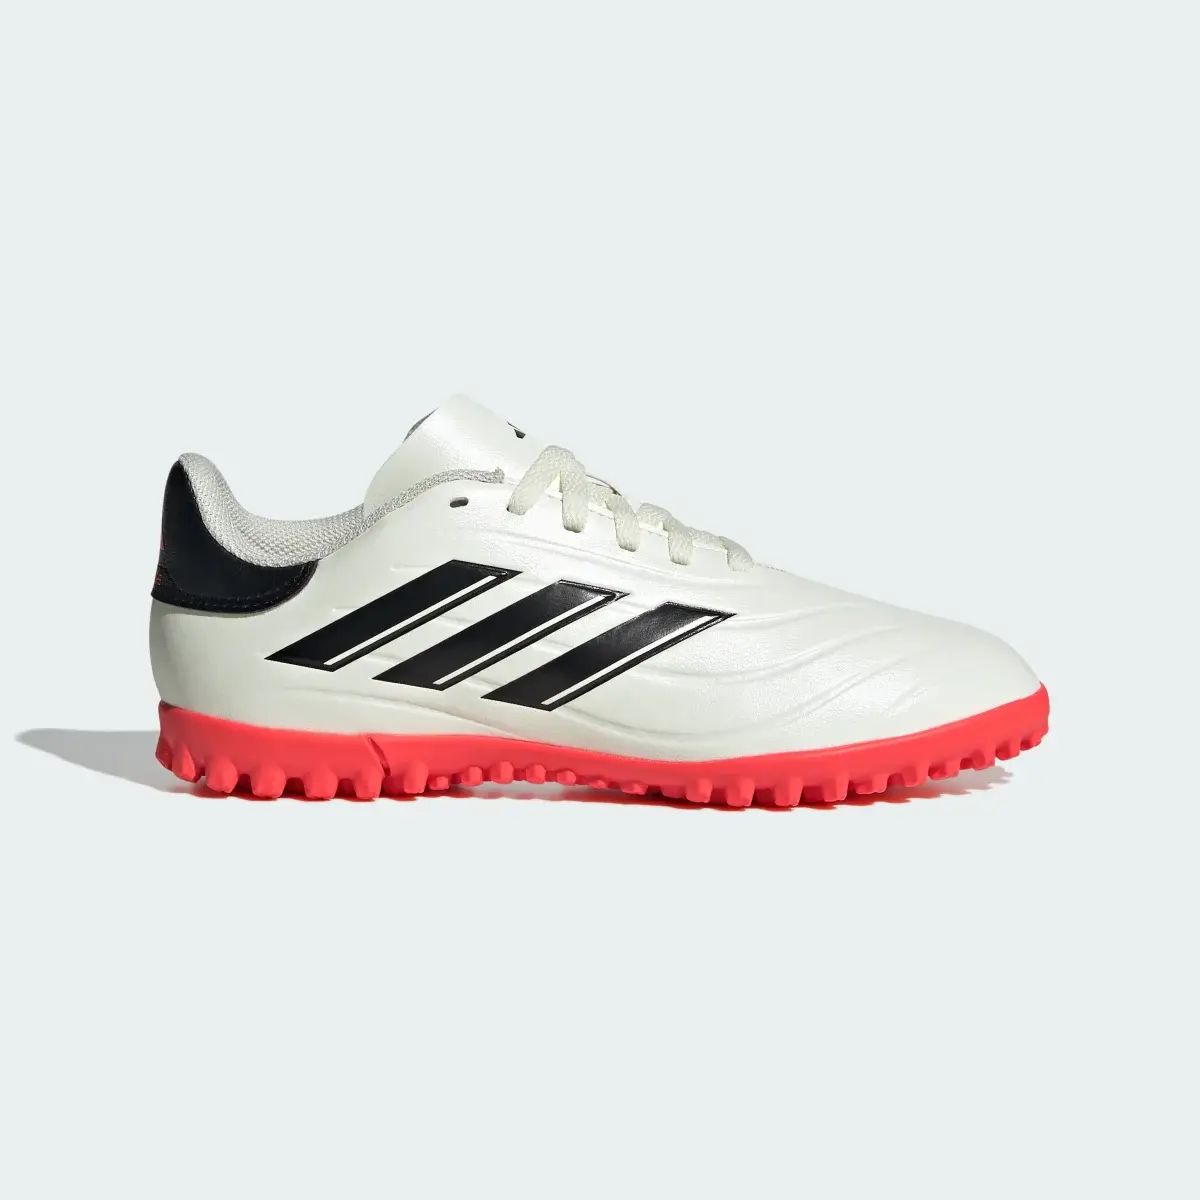 Adidas Copa Pure II Club Turf Boots. 2